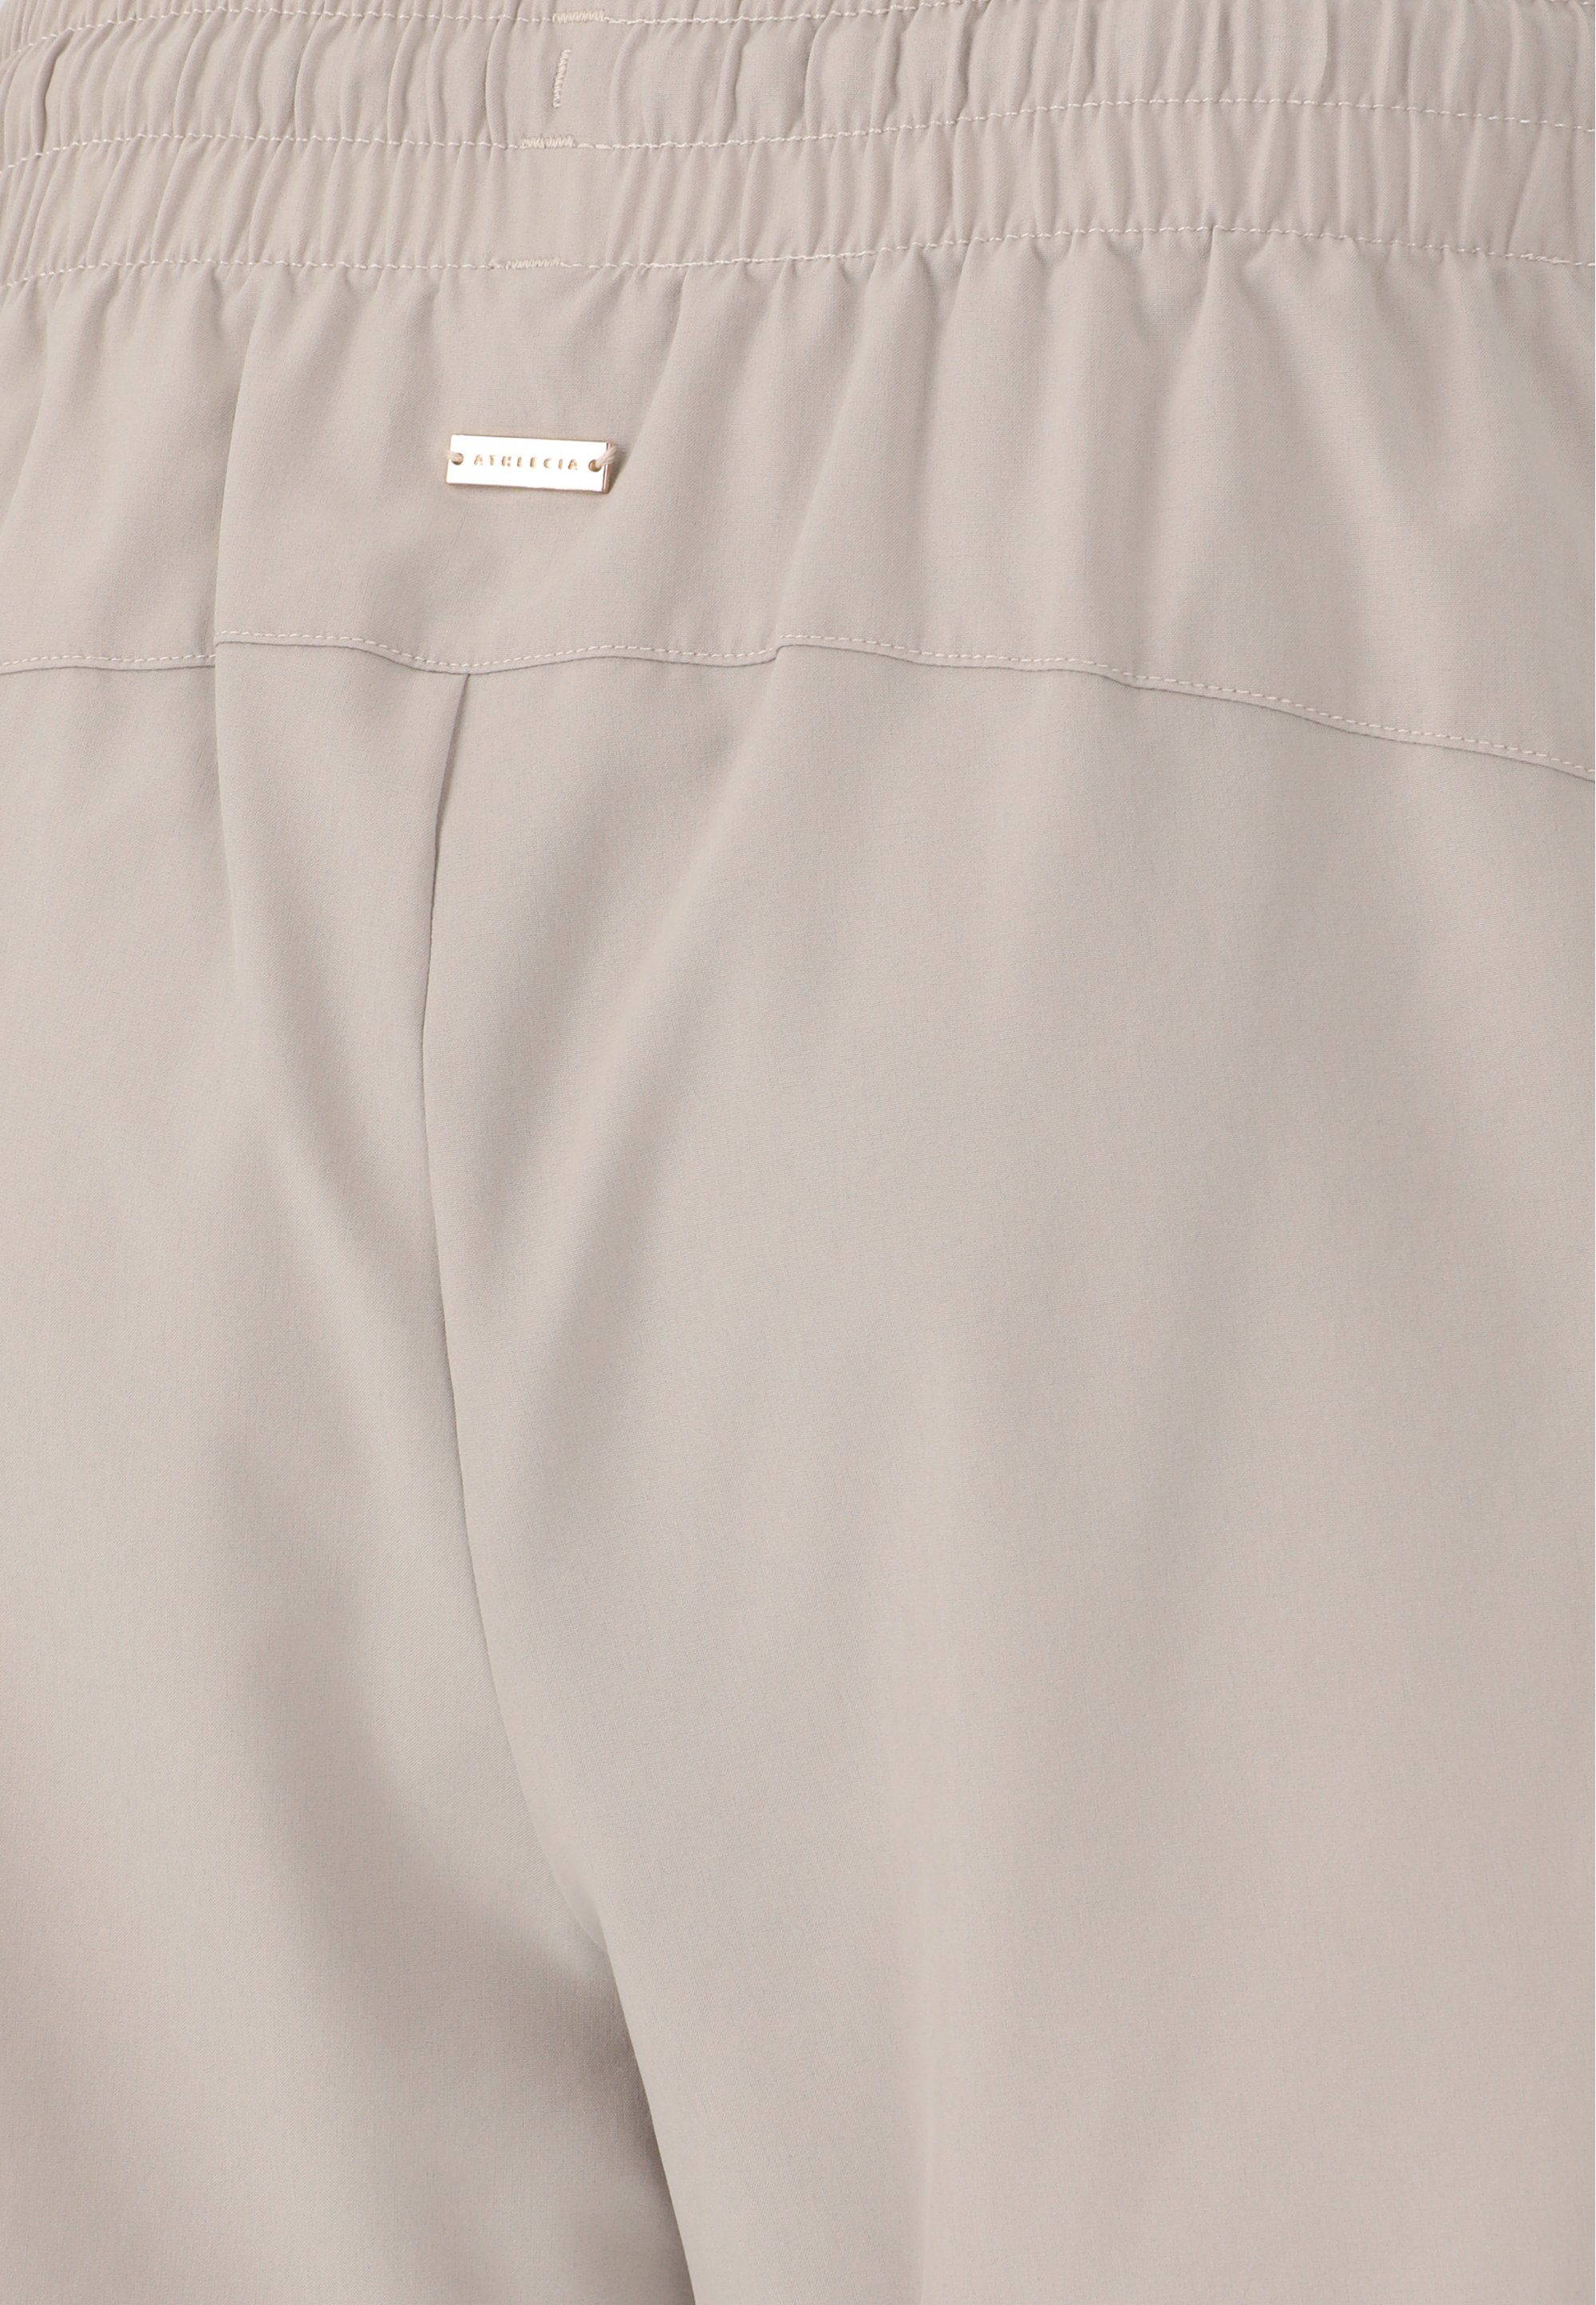 praktischen Shorts mit ATHLECIA Timmie Seitentaschen grau